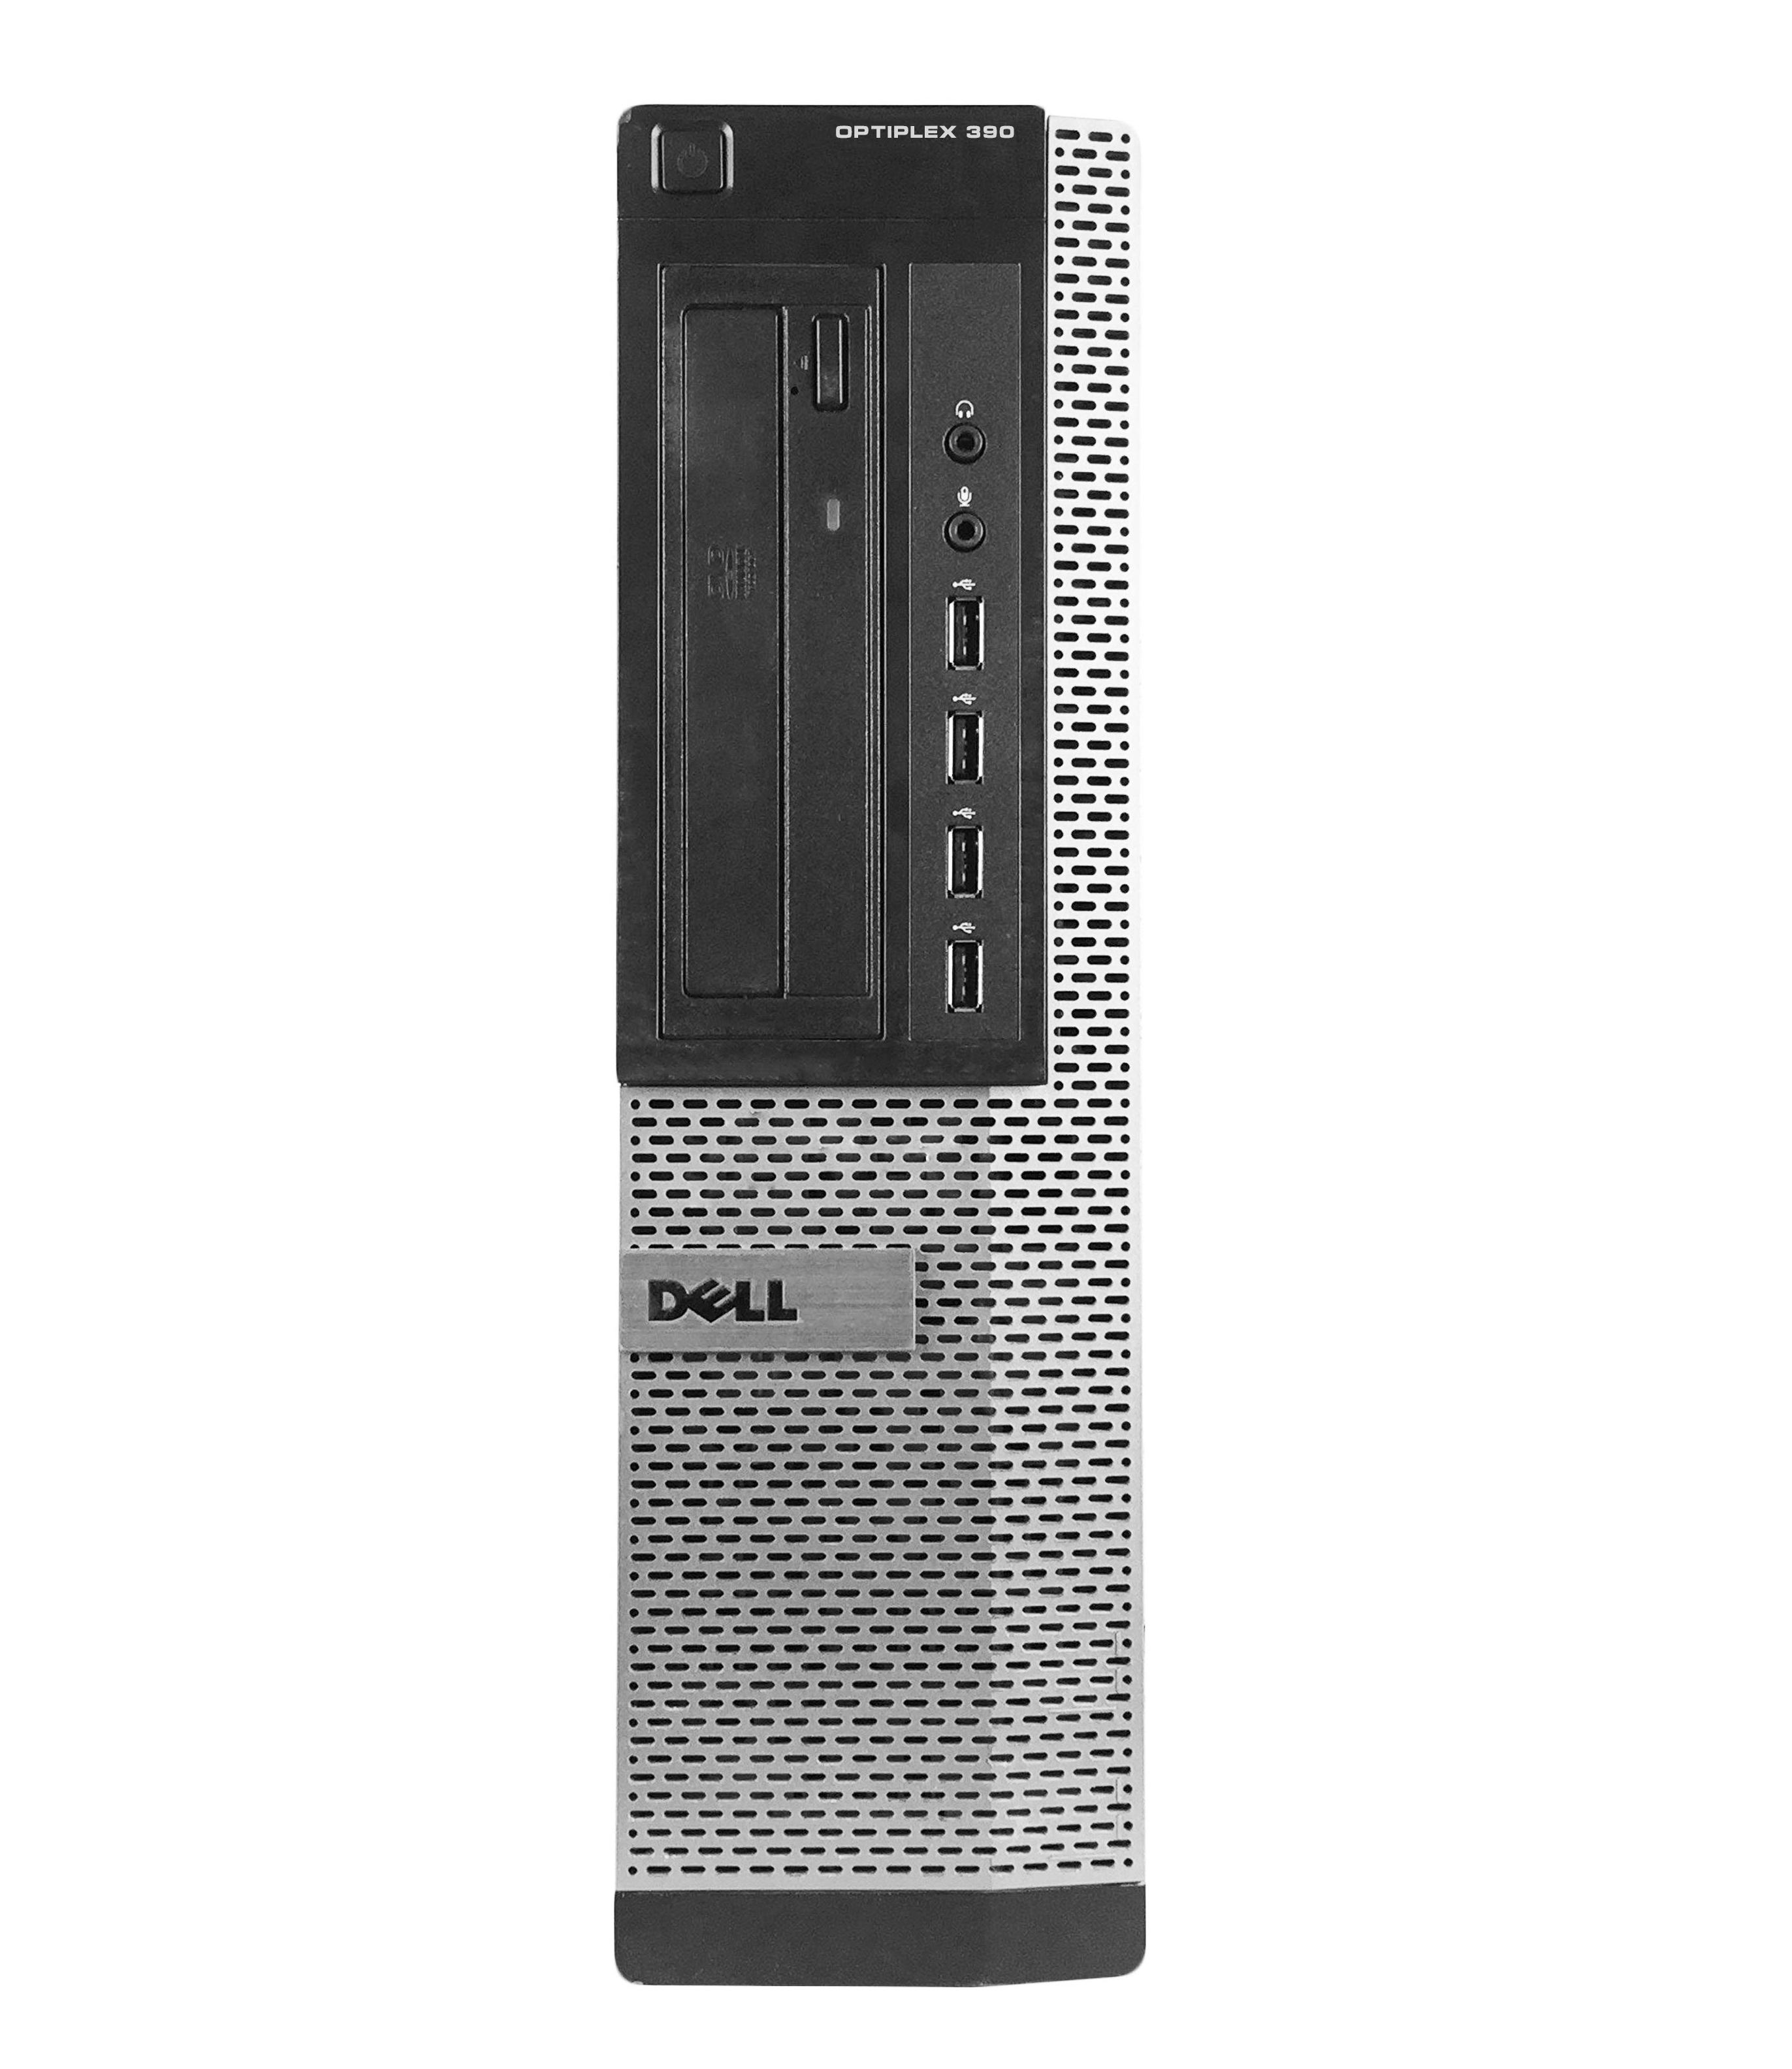 Máy tính đồng bộ Dell Optiplex 390 DT